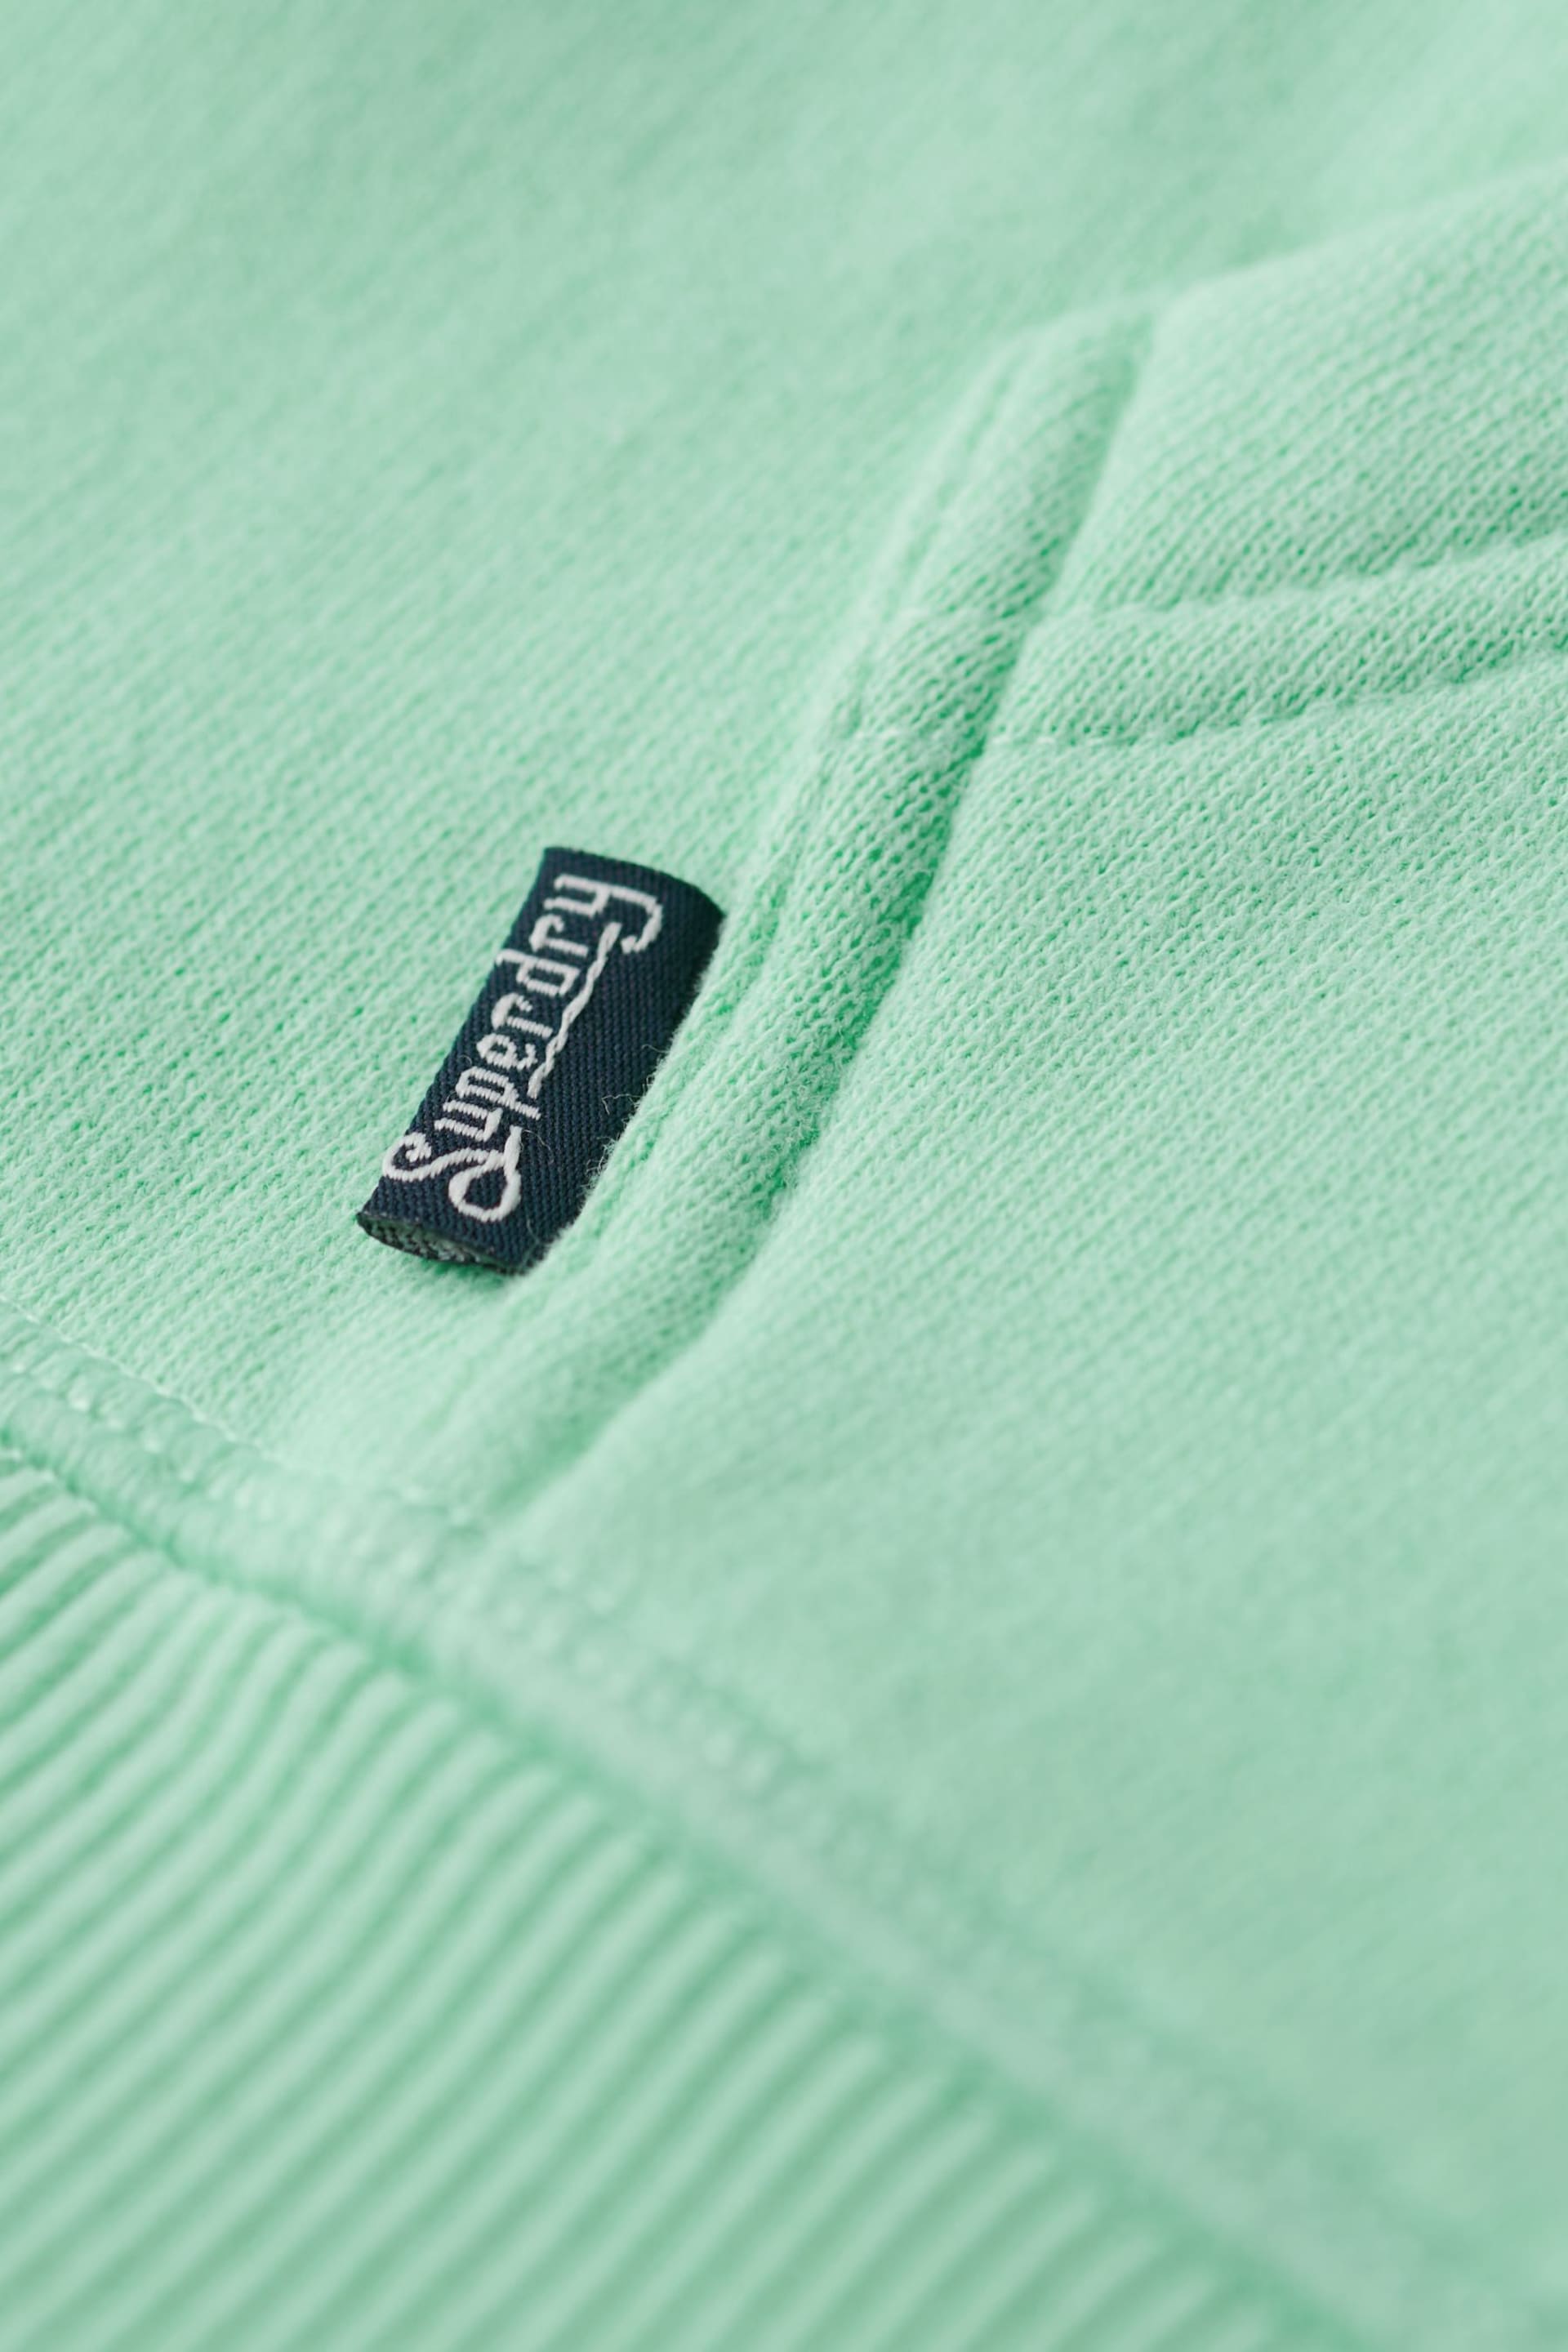 Superdry Green Essential Logo Zip Hoodie - Image 4 of 5